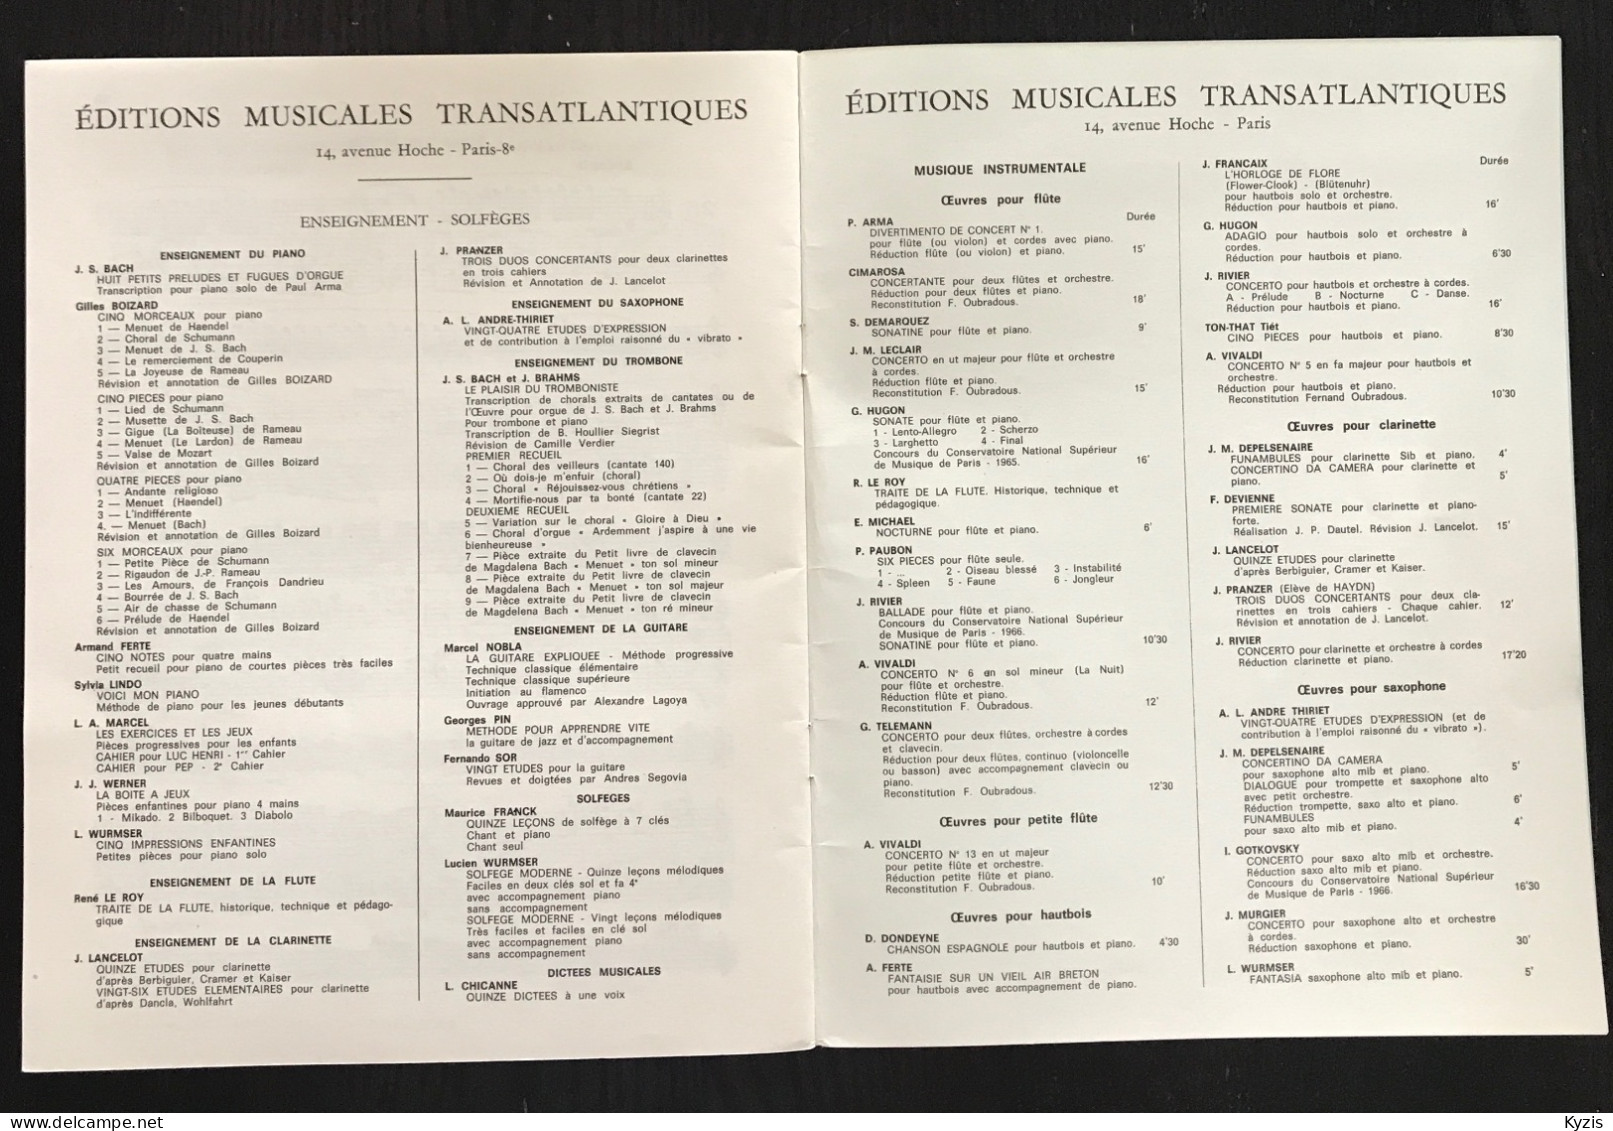 JACQUES LANCELOT - Vingt Cinq études Faciles Et Progressives Pour Clarinette - DÉDICACÉ PAR JACQUES LANCELOT -1969- - Insegnamento